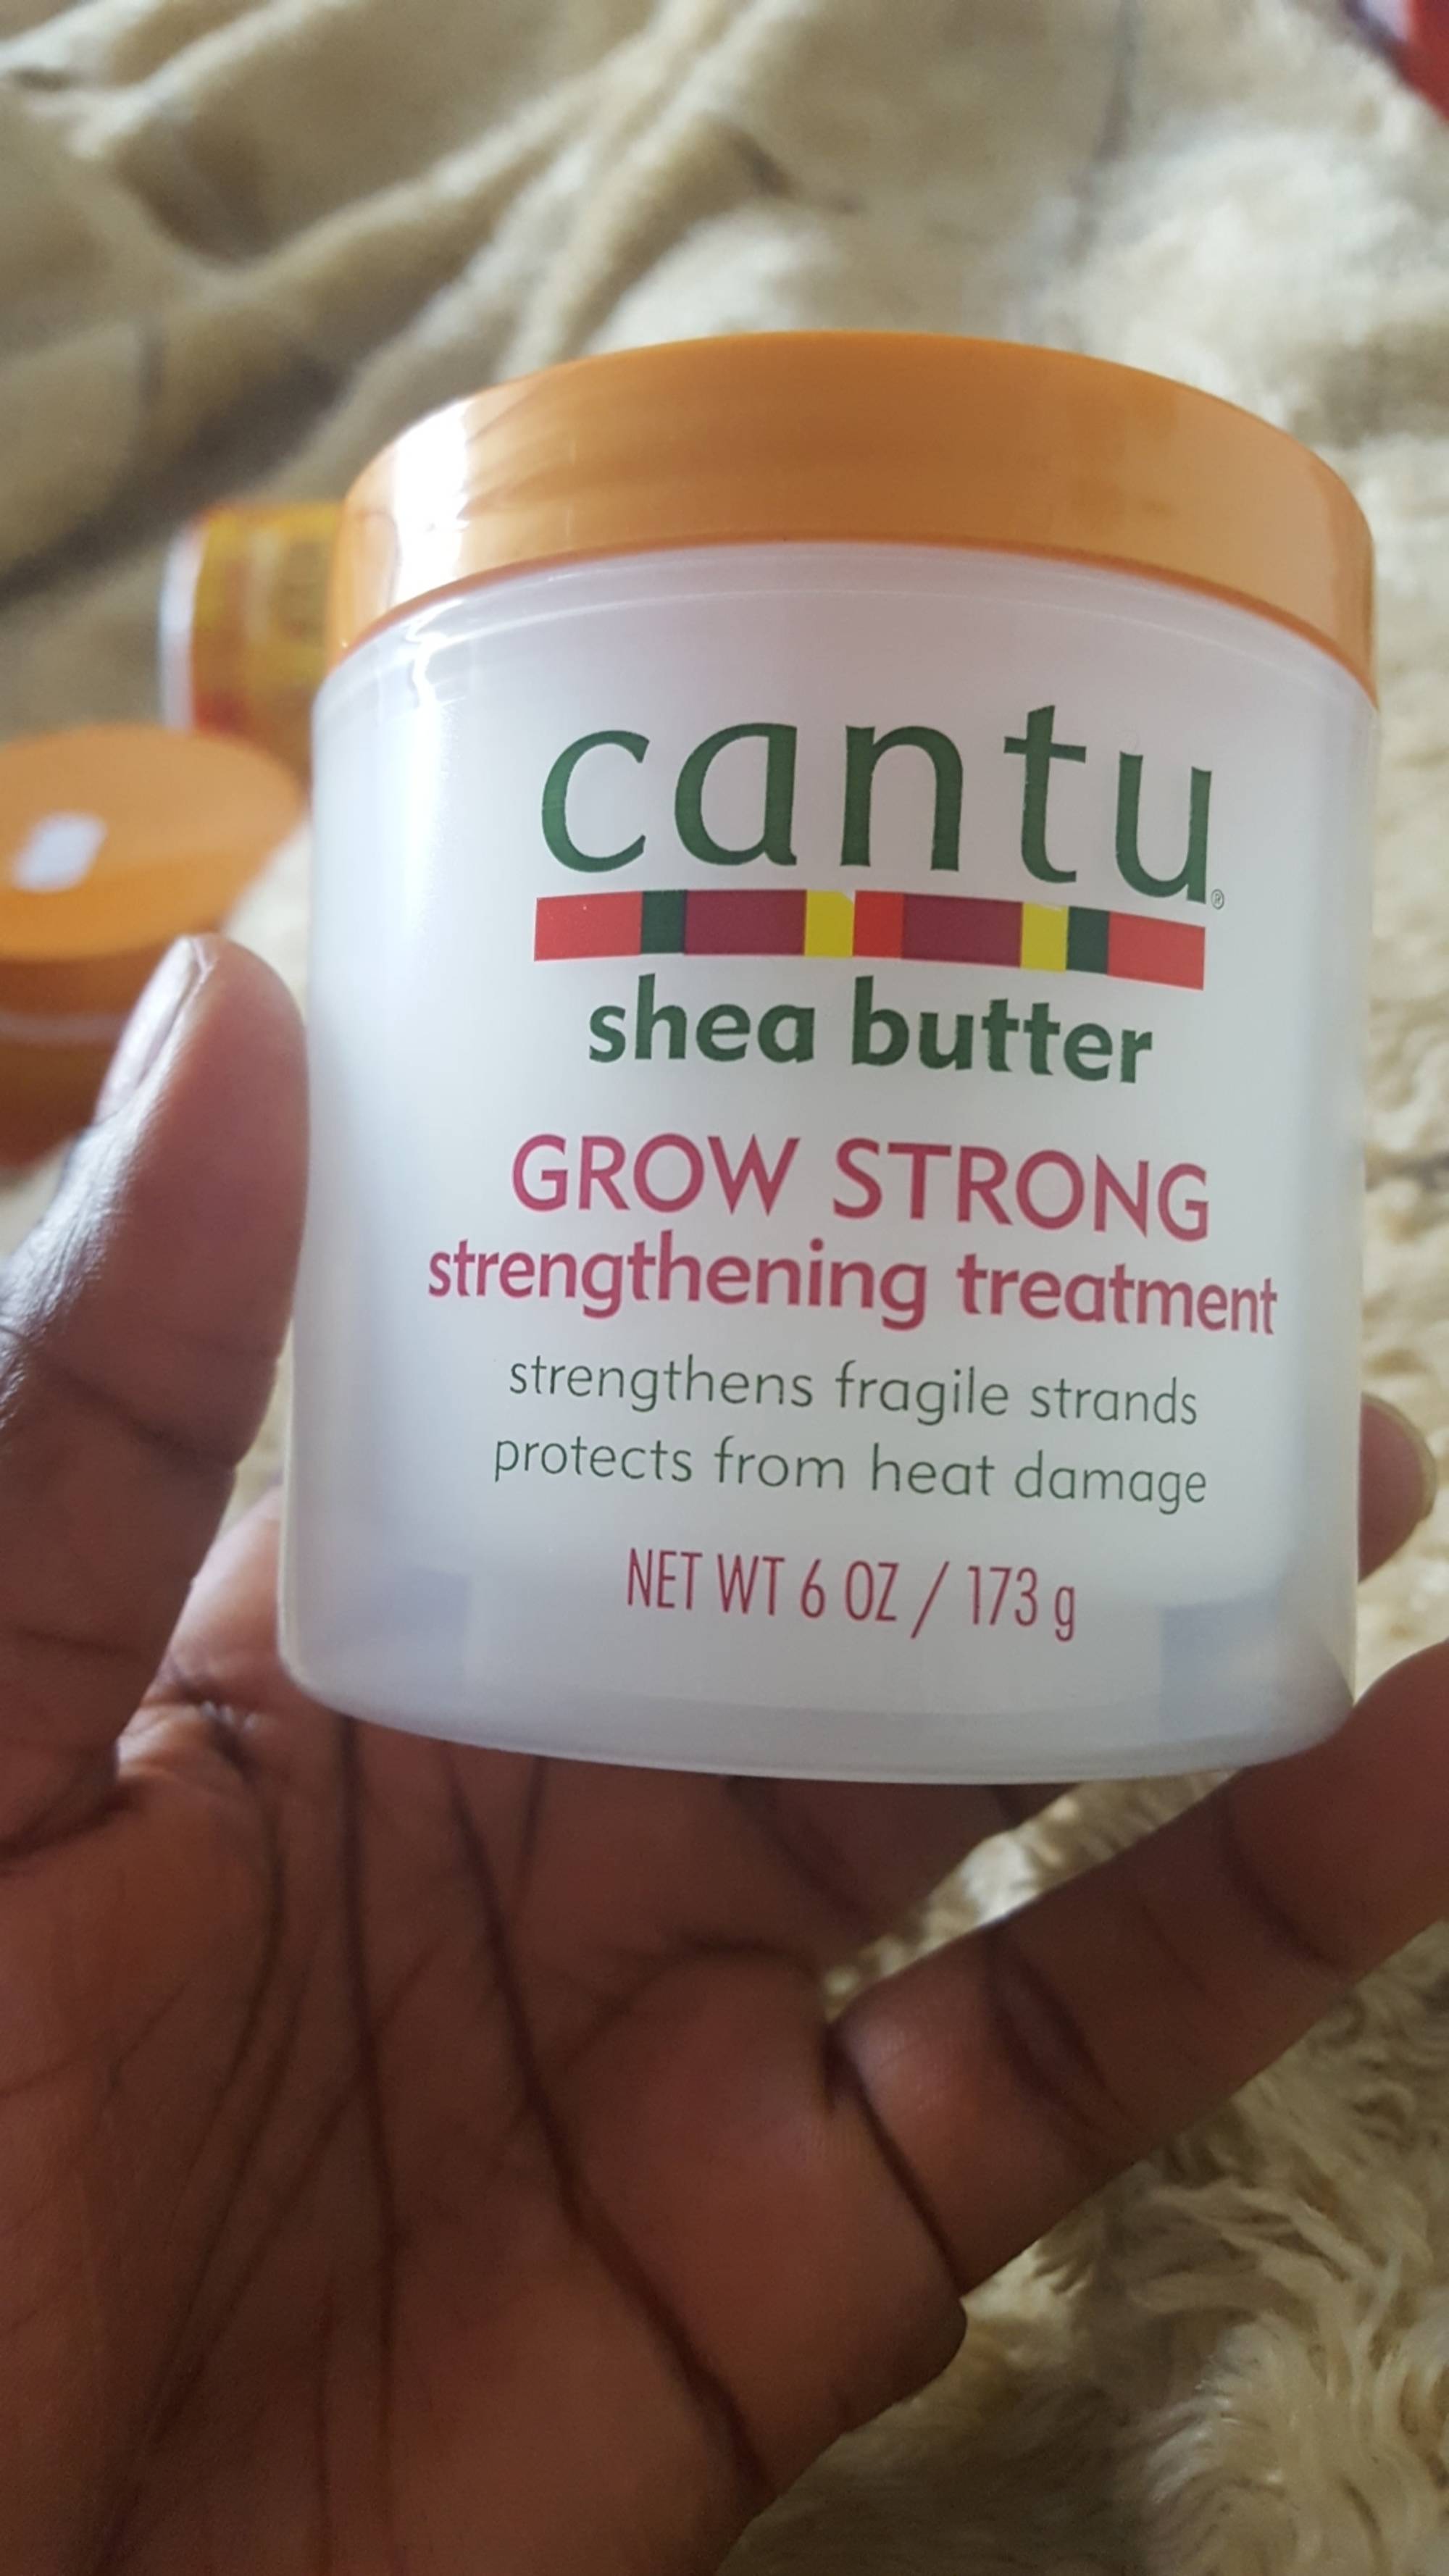 CANTU - Shea butter Grow strong - Strengthening treatment